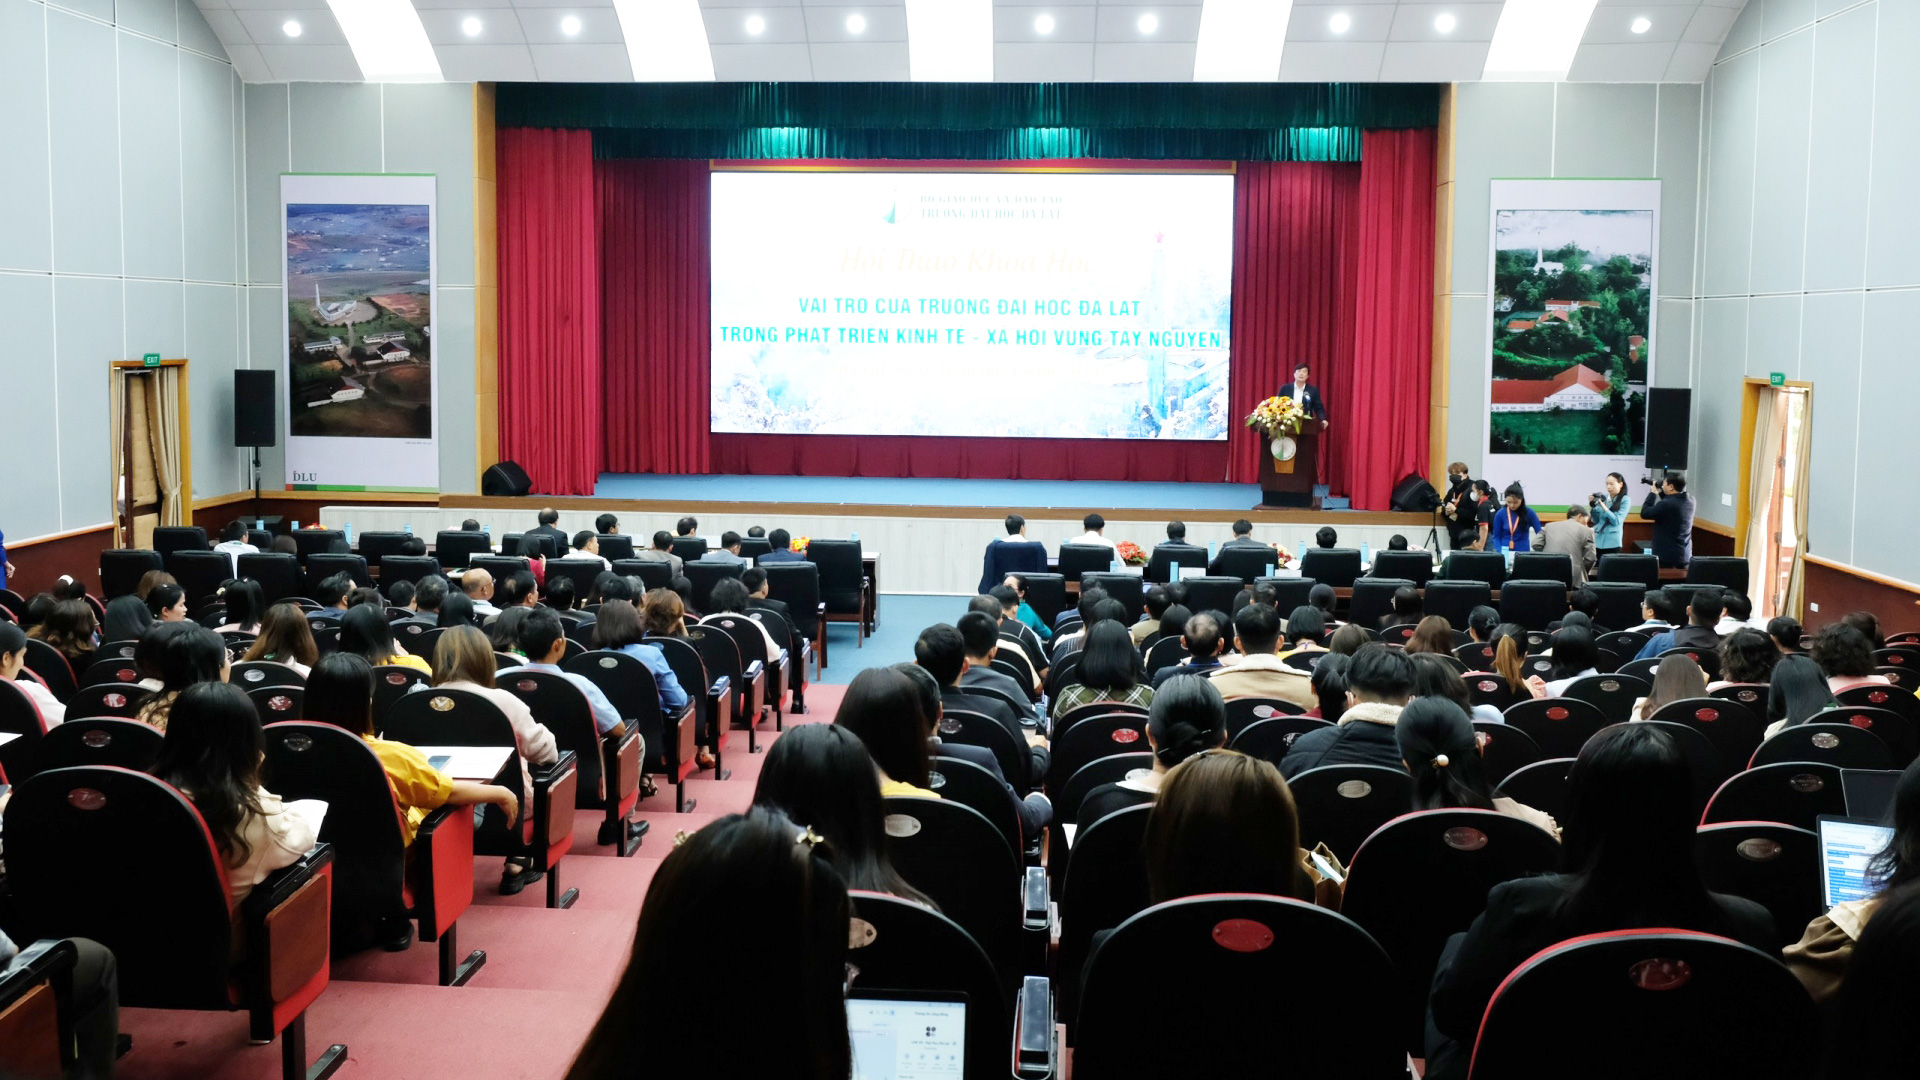 Hội thảo khoa học “Vai trò của Trường Đại học Đà Lạt trong phát triển kinh tế - xã hội vùng Tây Nguyên” thu hút sự tham gia của rất nhiều các nhà nghiên cứu, chuyên gia đầu ngành của Lâm Đồng